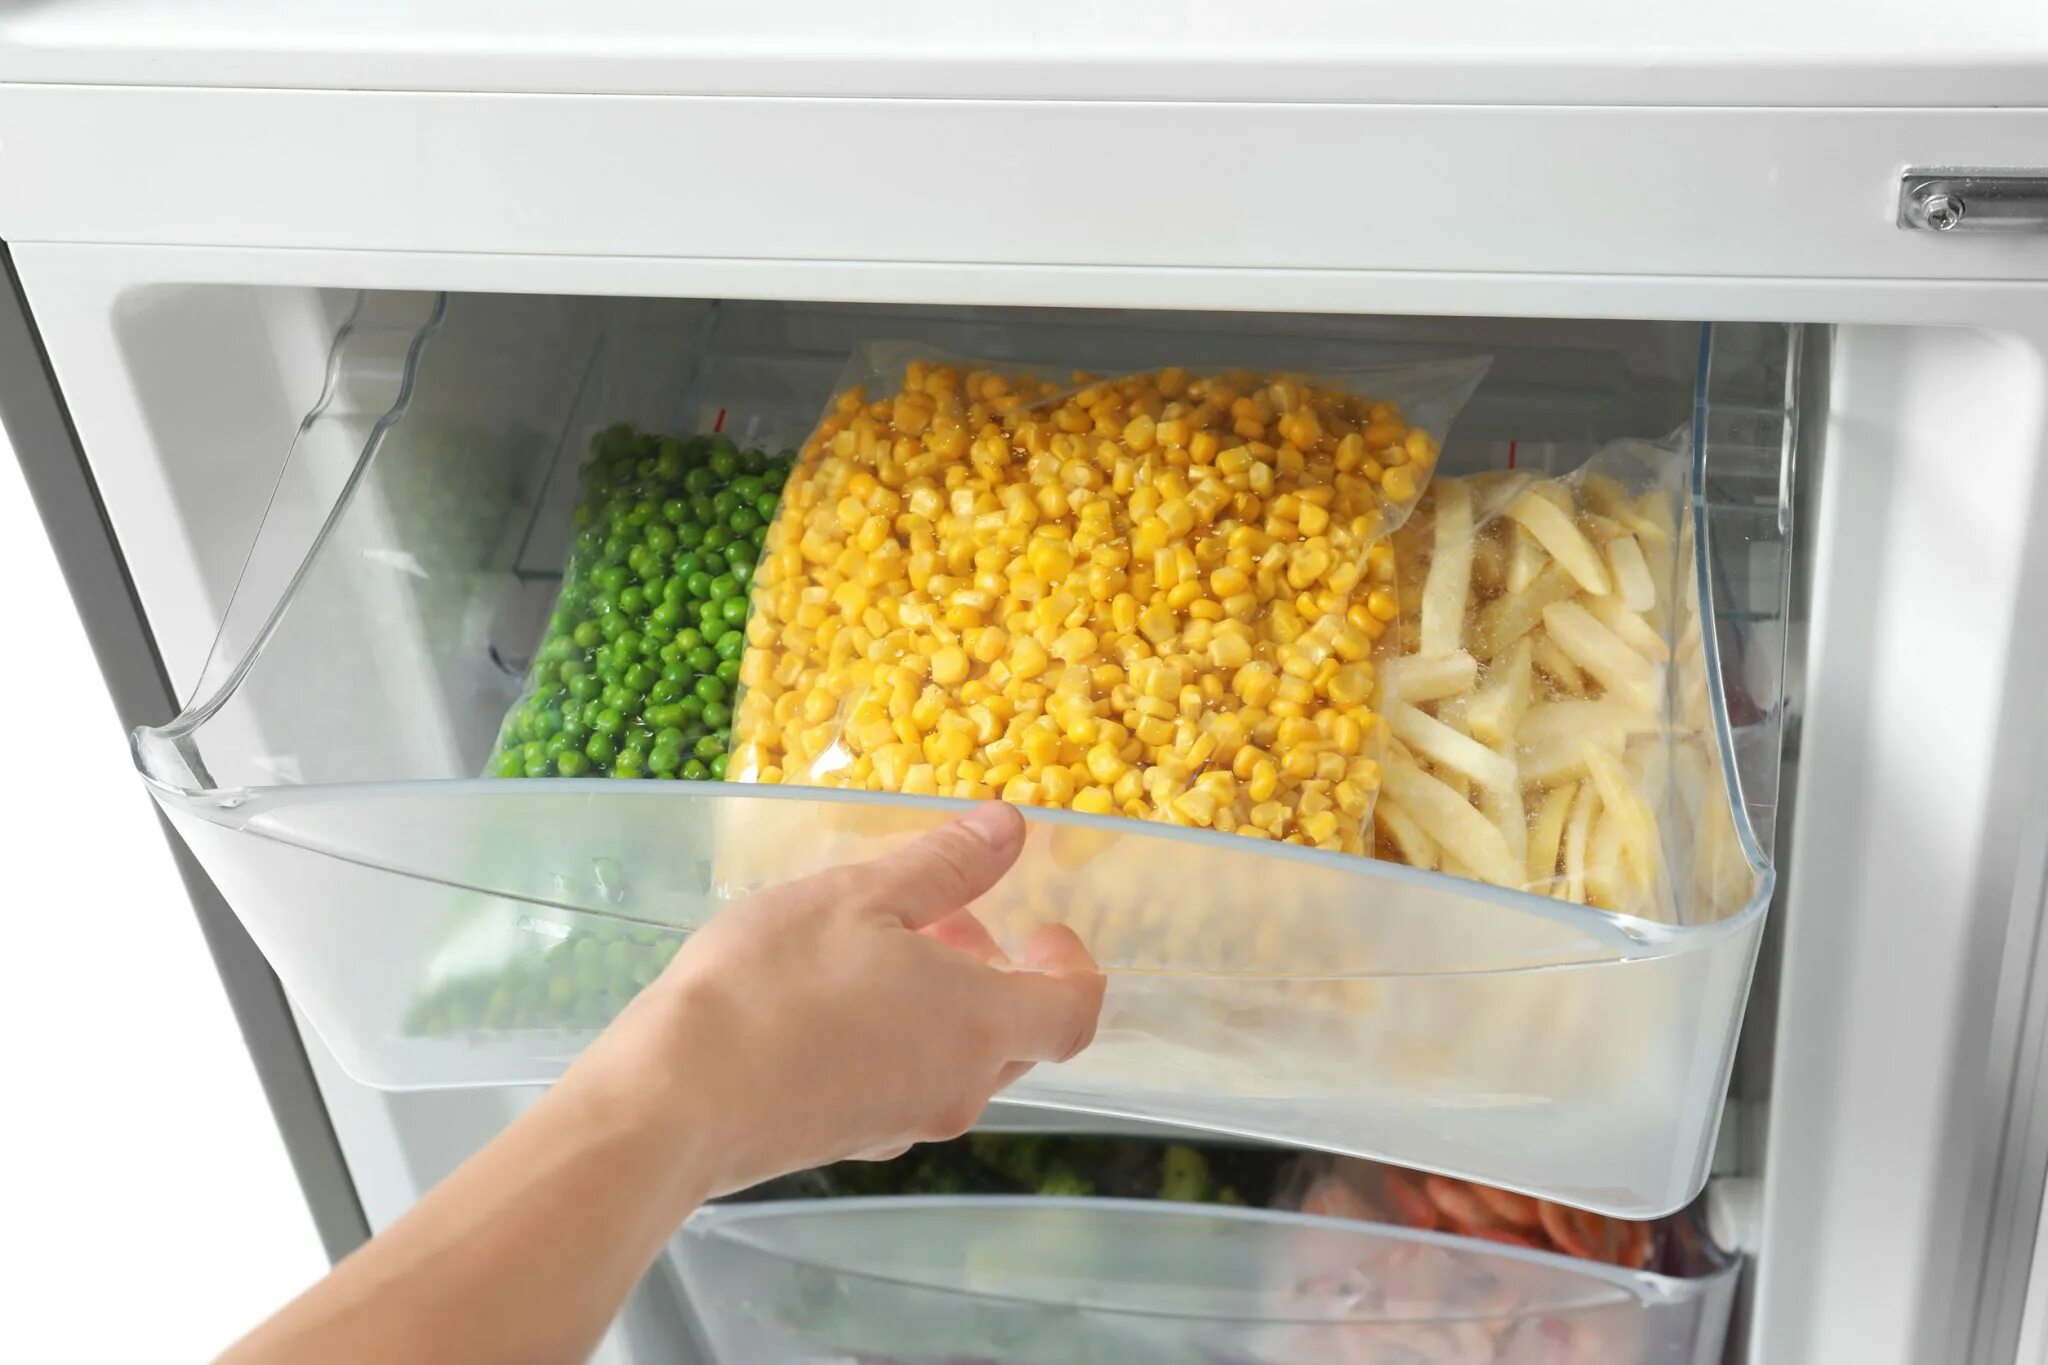 Safe methods. Холодильник с полкой для заморозки пельменей. Холодильник с лотком для заморозки. Замороженные овощи в холодильнике. Открытый холодильник с продуктами заморозка.